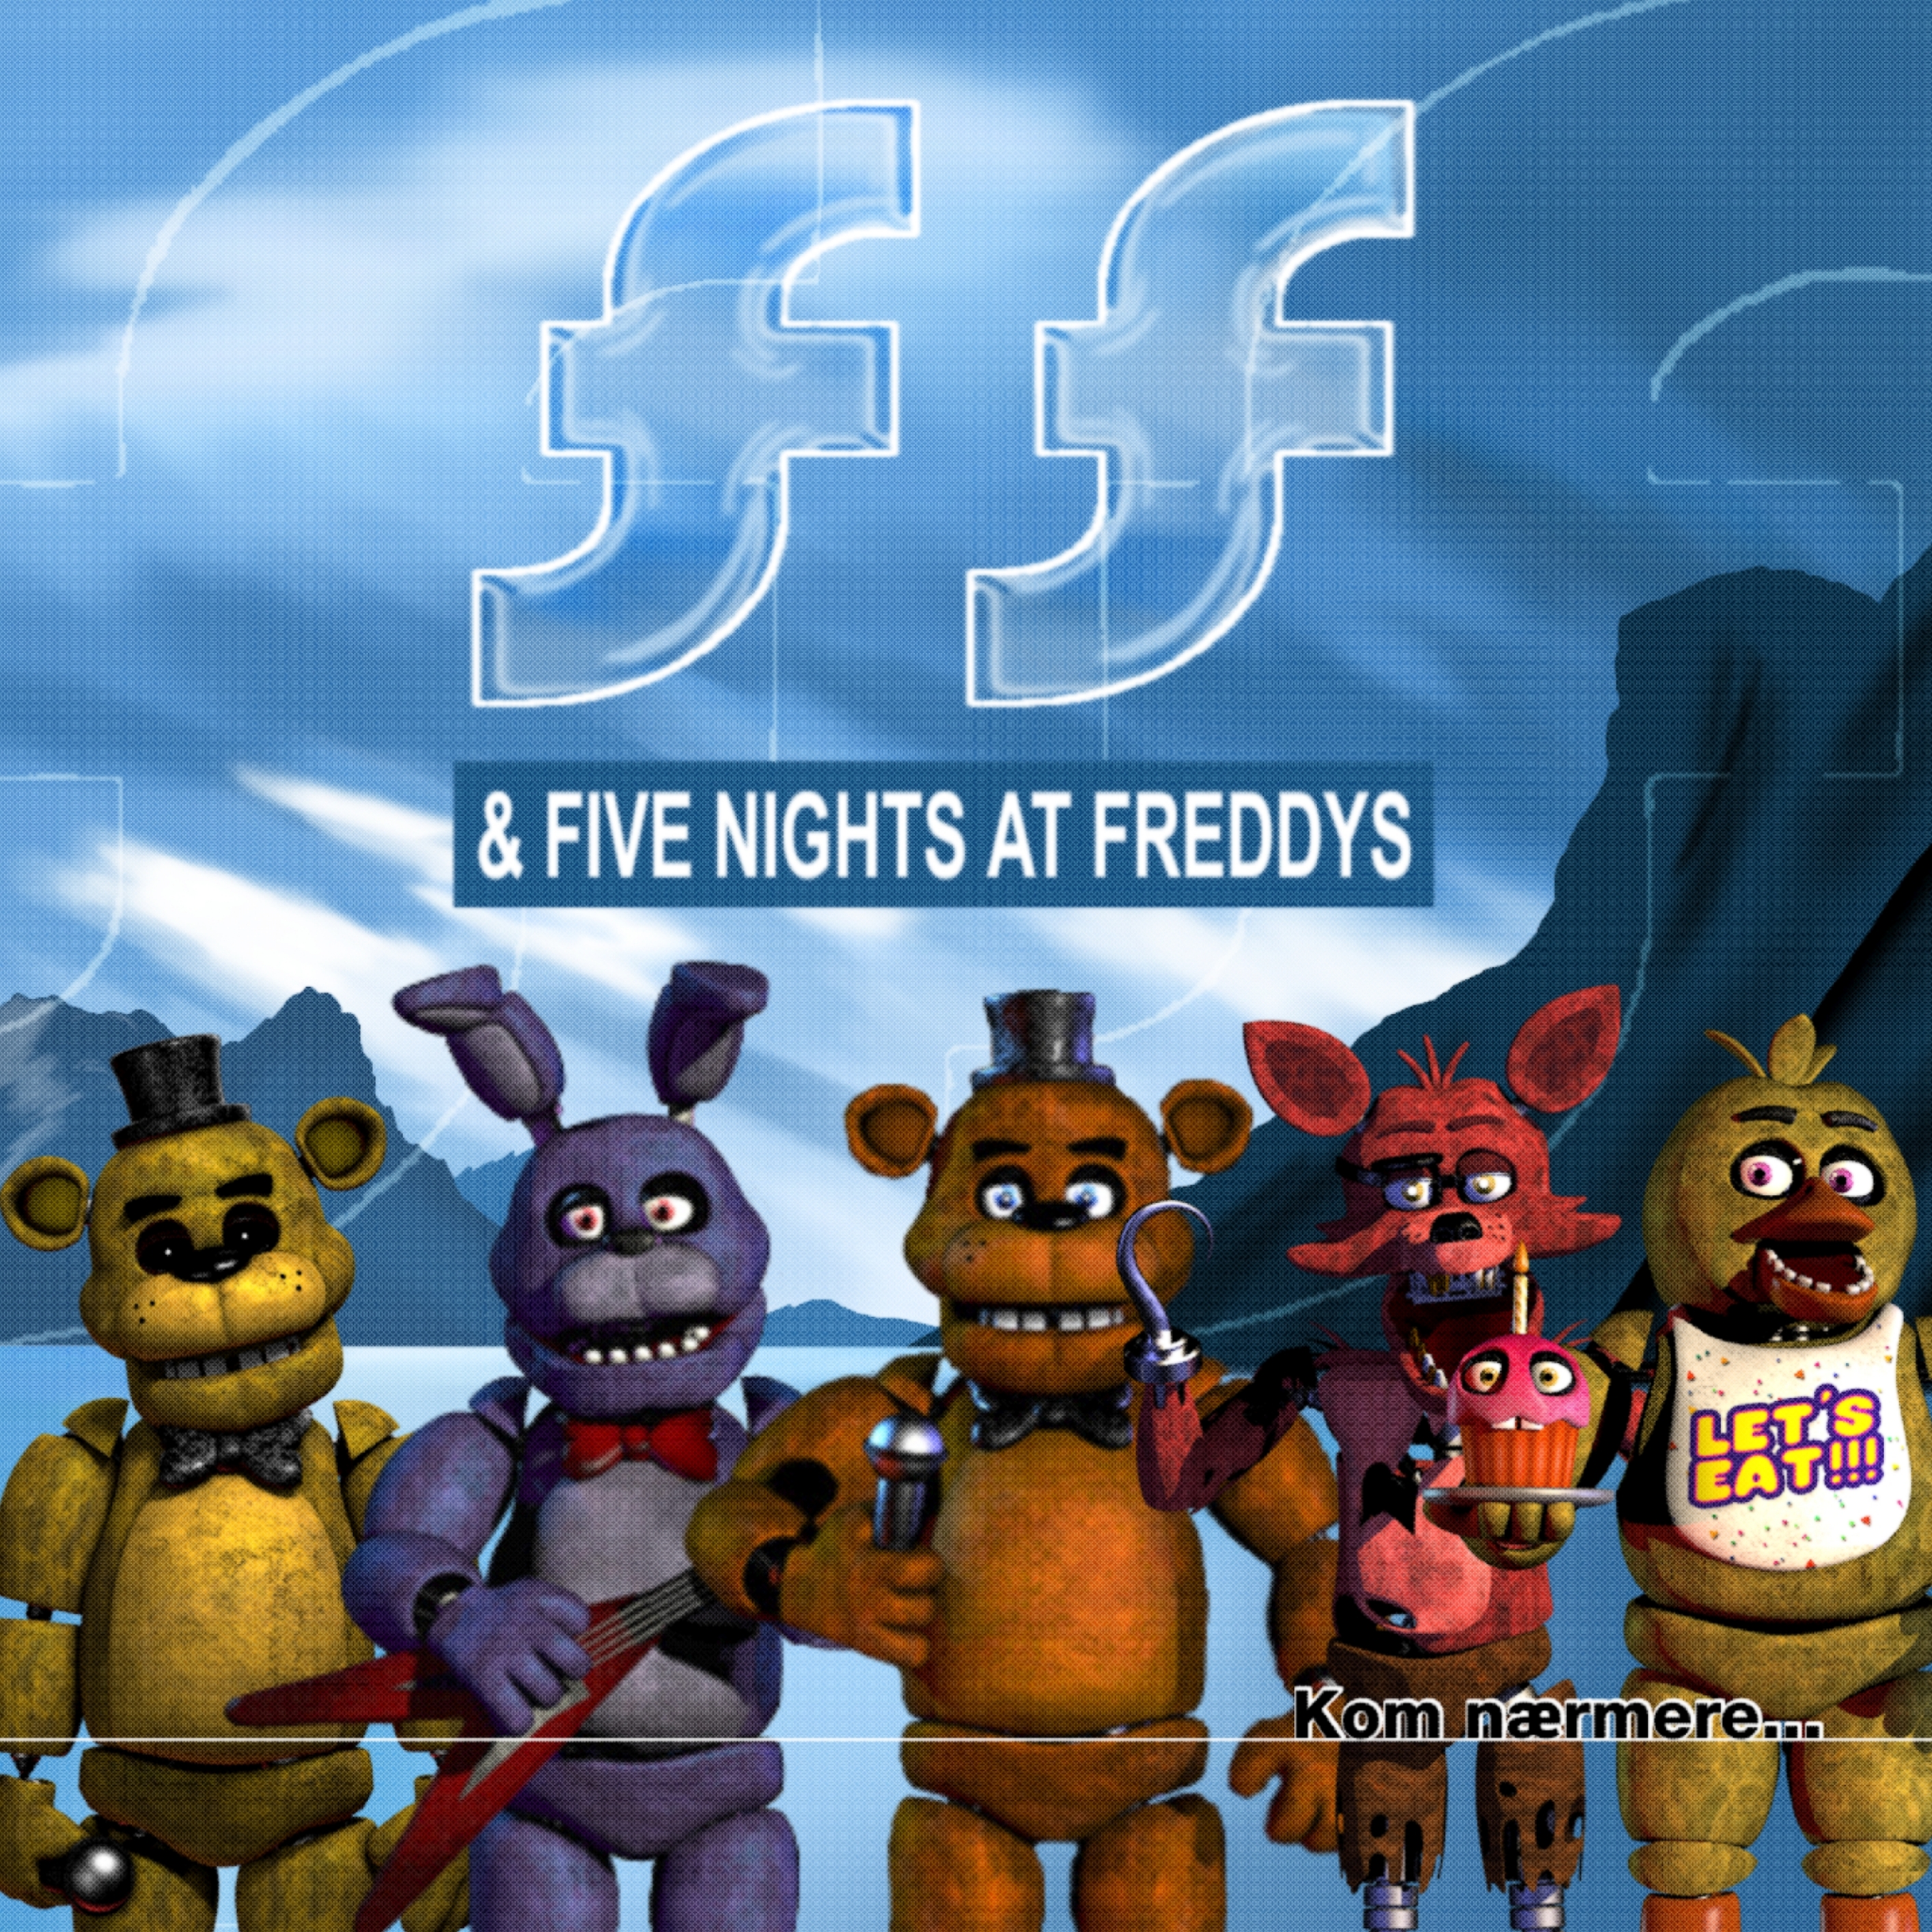 Fnaf 1 Pack Remastered MMD DL by FreddyAnimator64 on DeviantArt